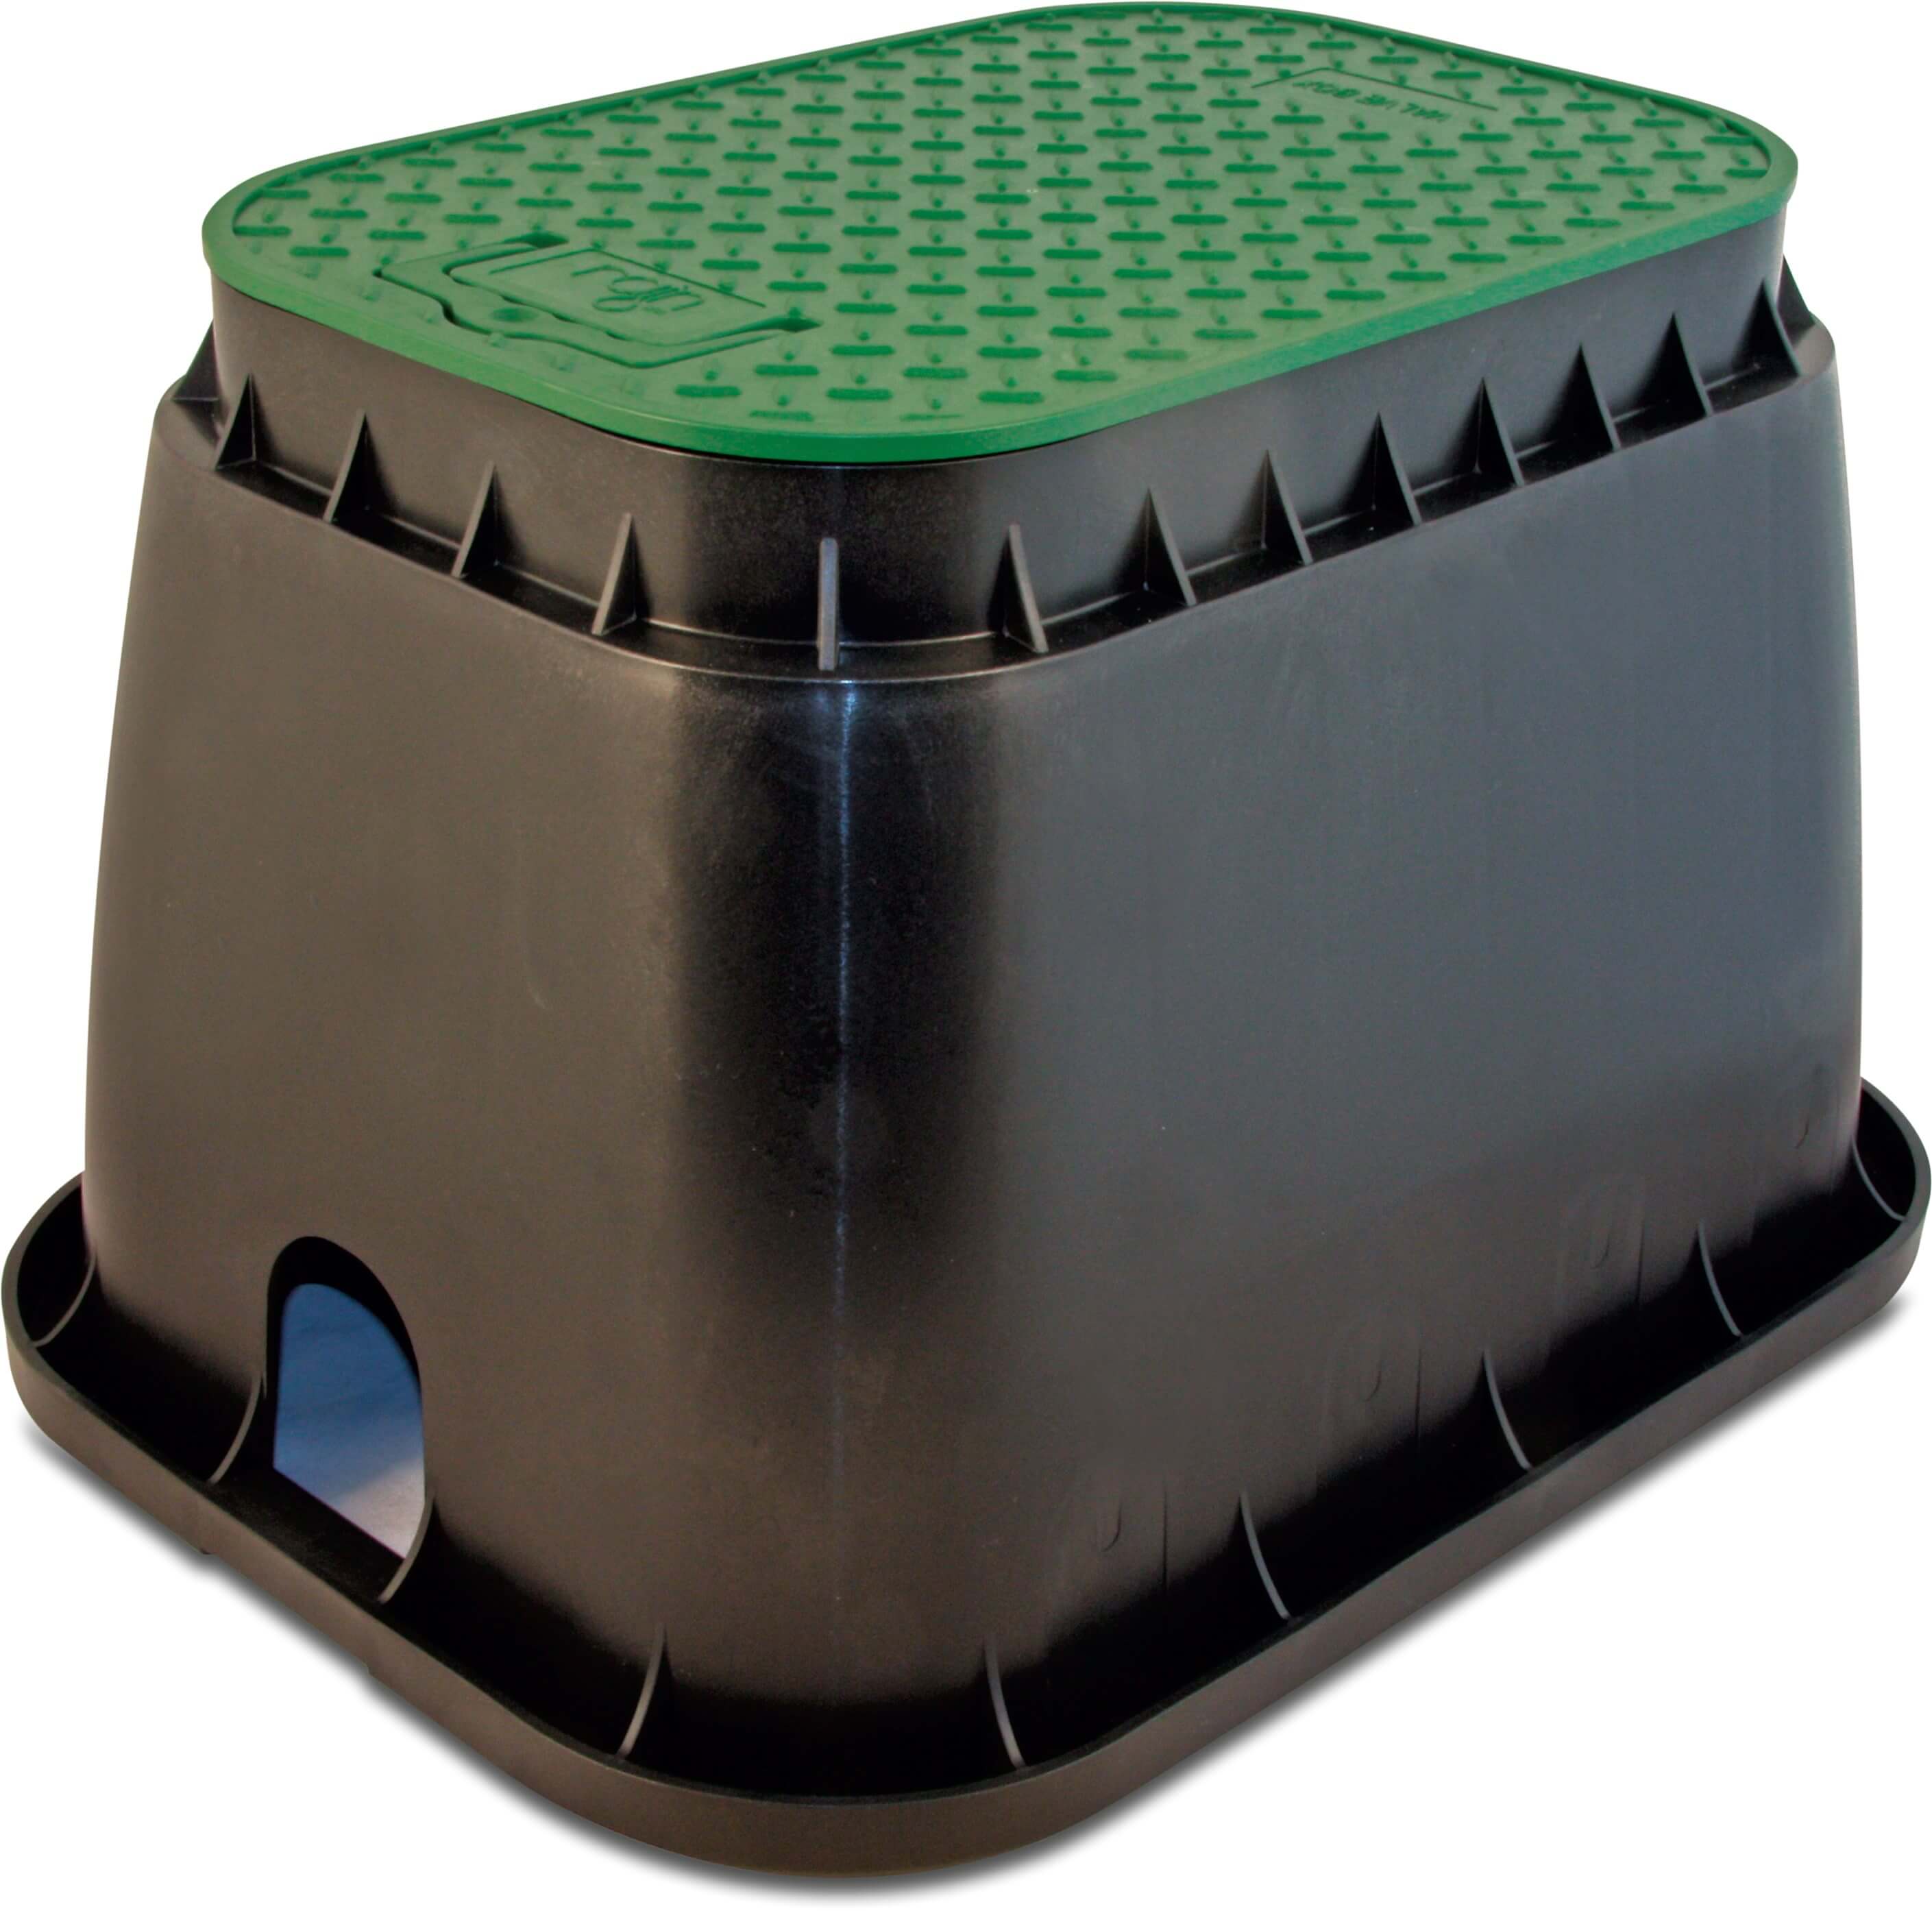 Rain Hydrantput rechthoekig PP zwart/groen type Standard